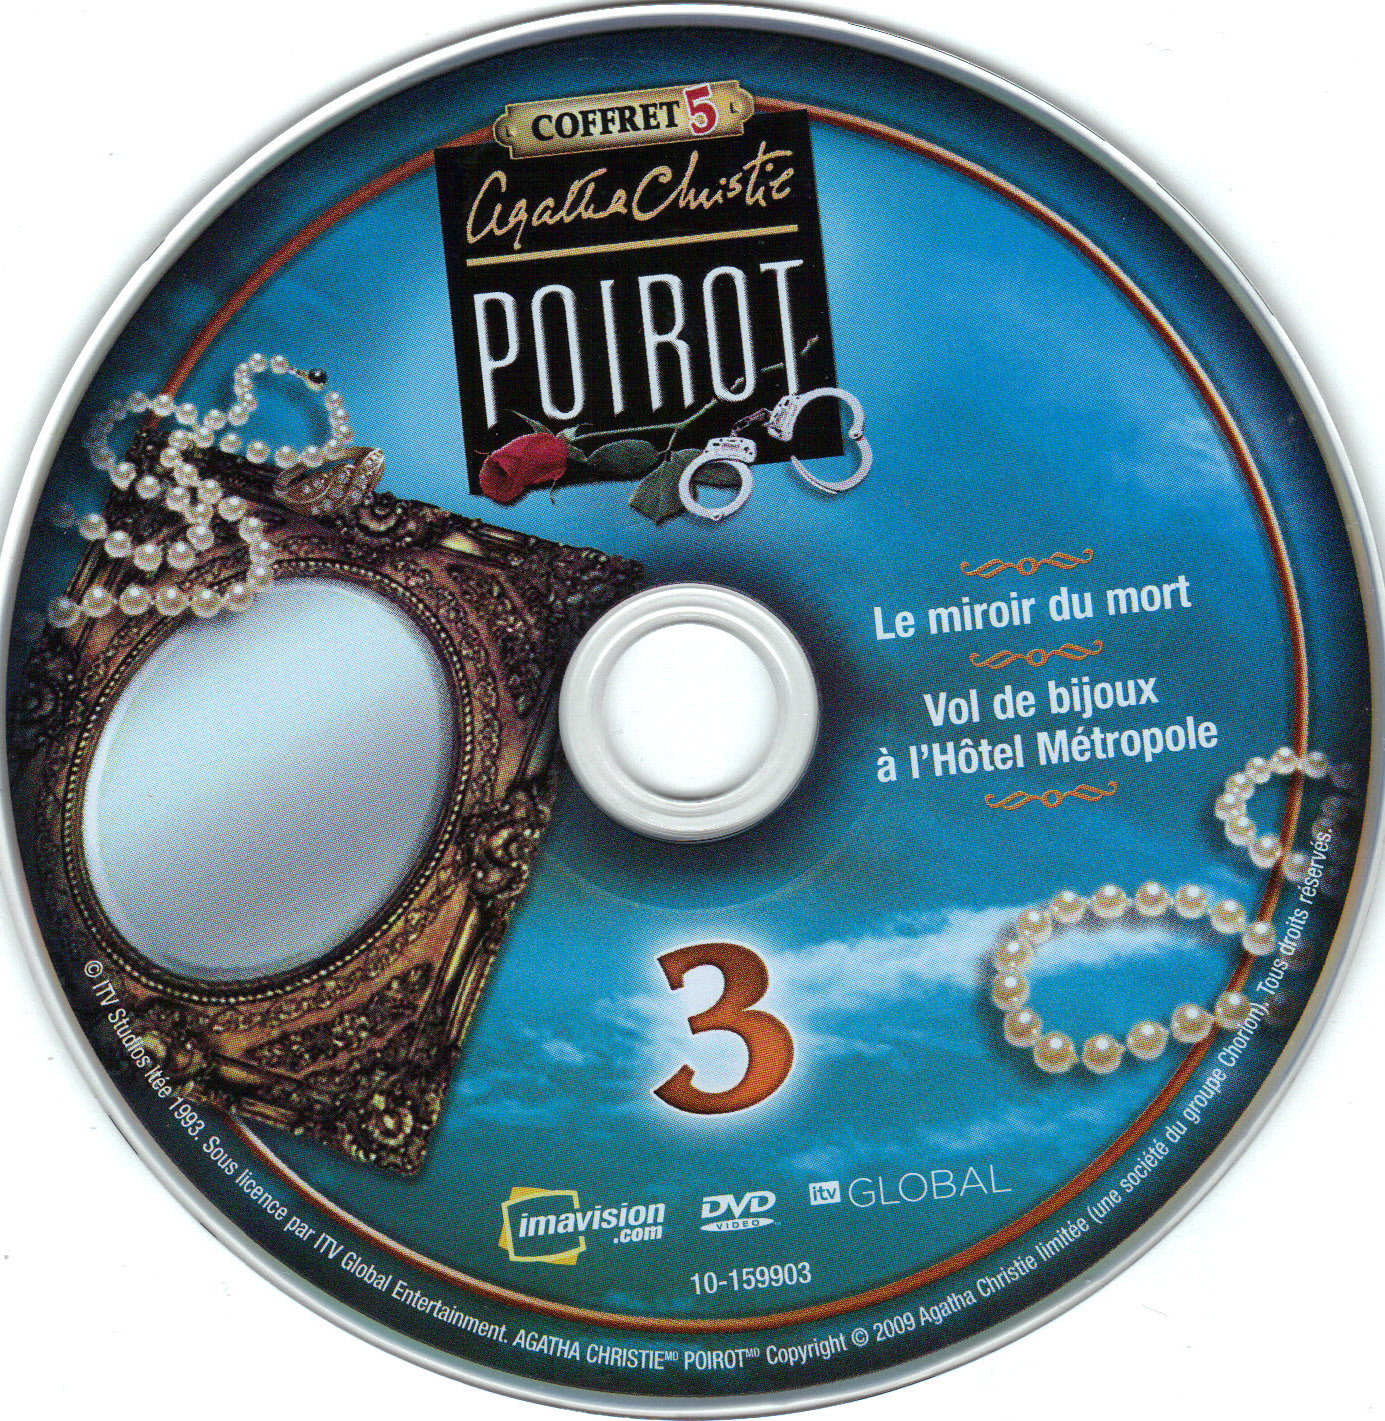 Hercule Poirot Saison 5 DISC 3 v2